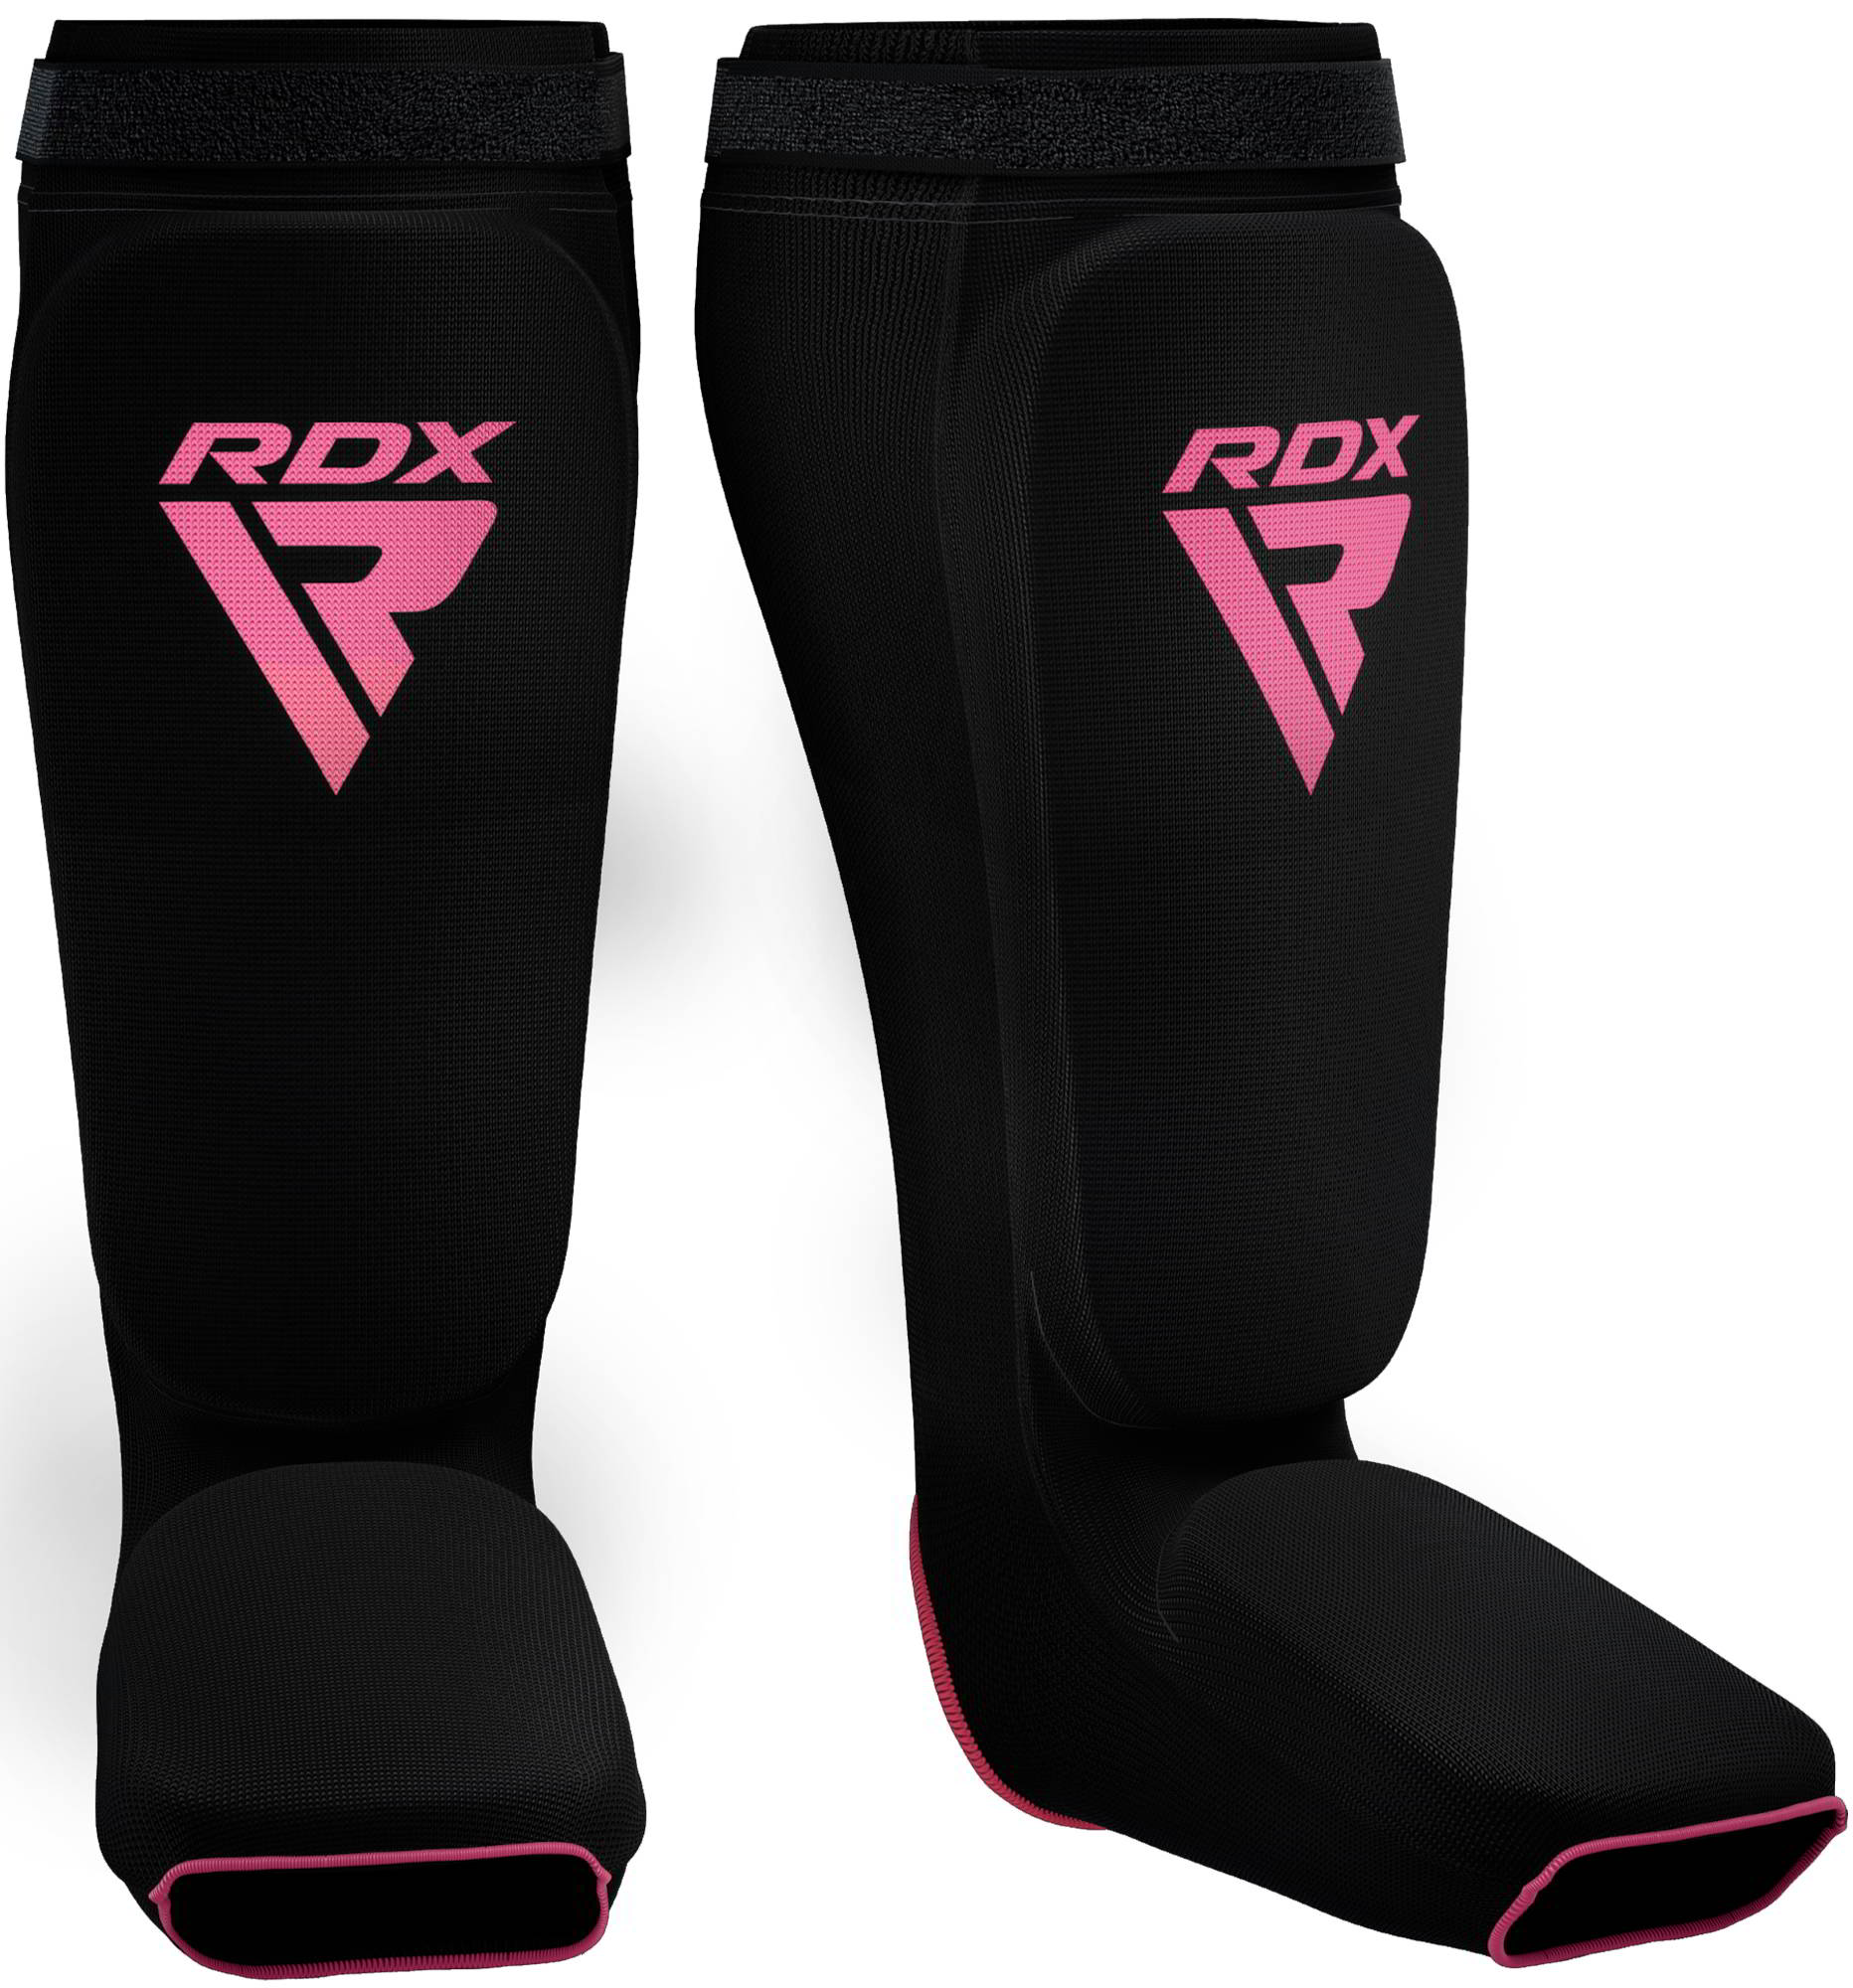 RDX SIB Shin Instep Guard OEKO-TEX® Standard 100 Certified Pink S